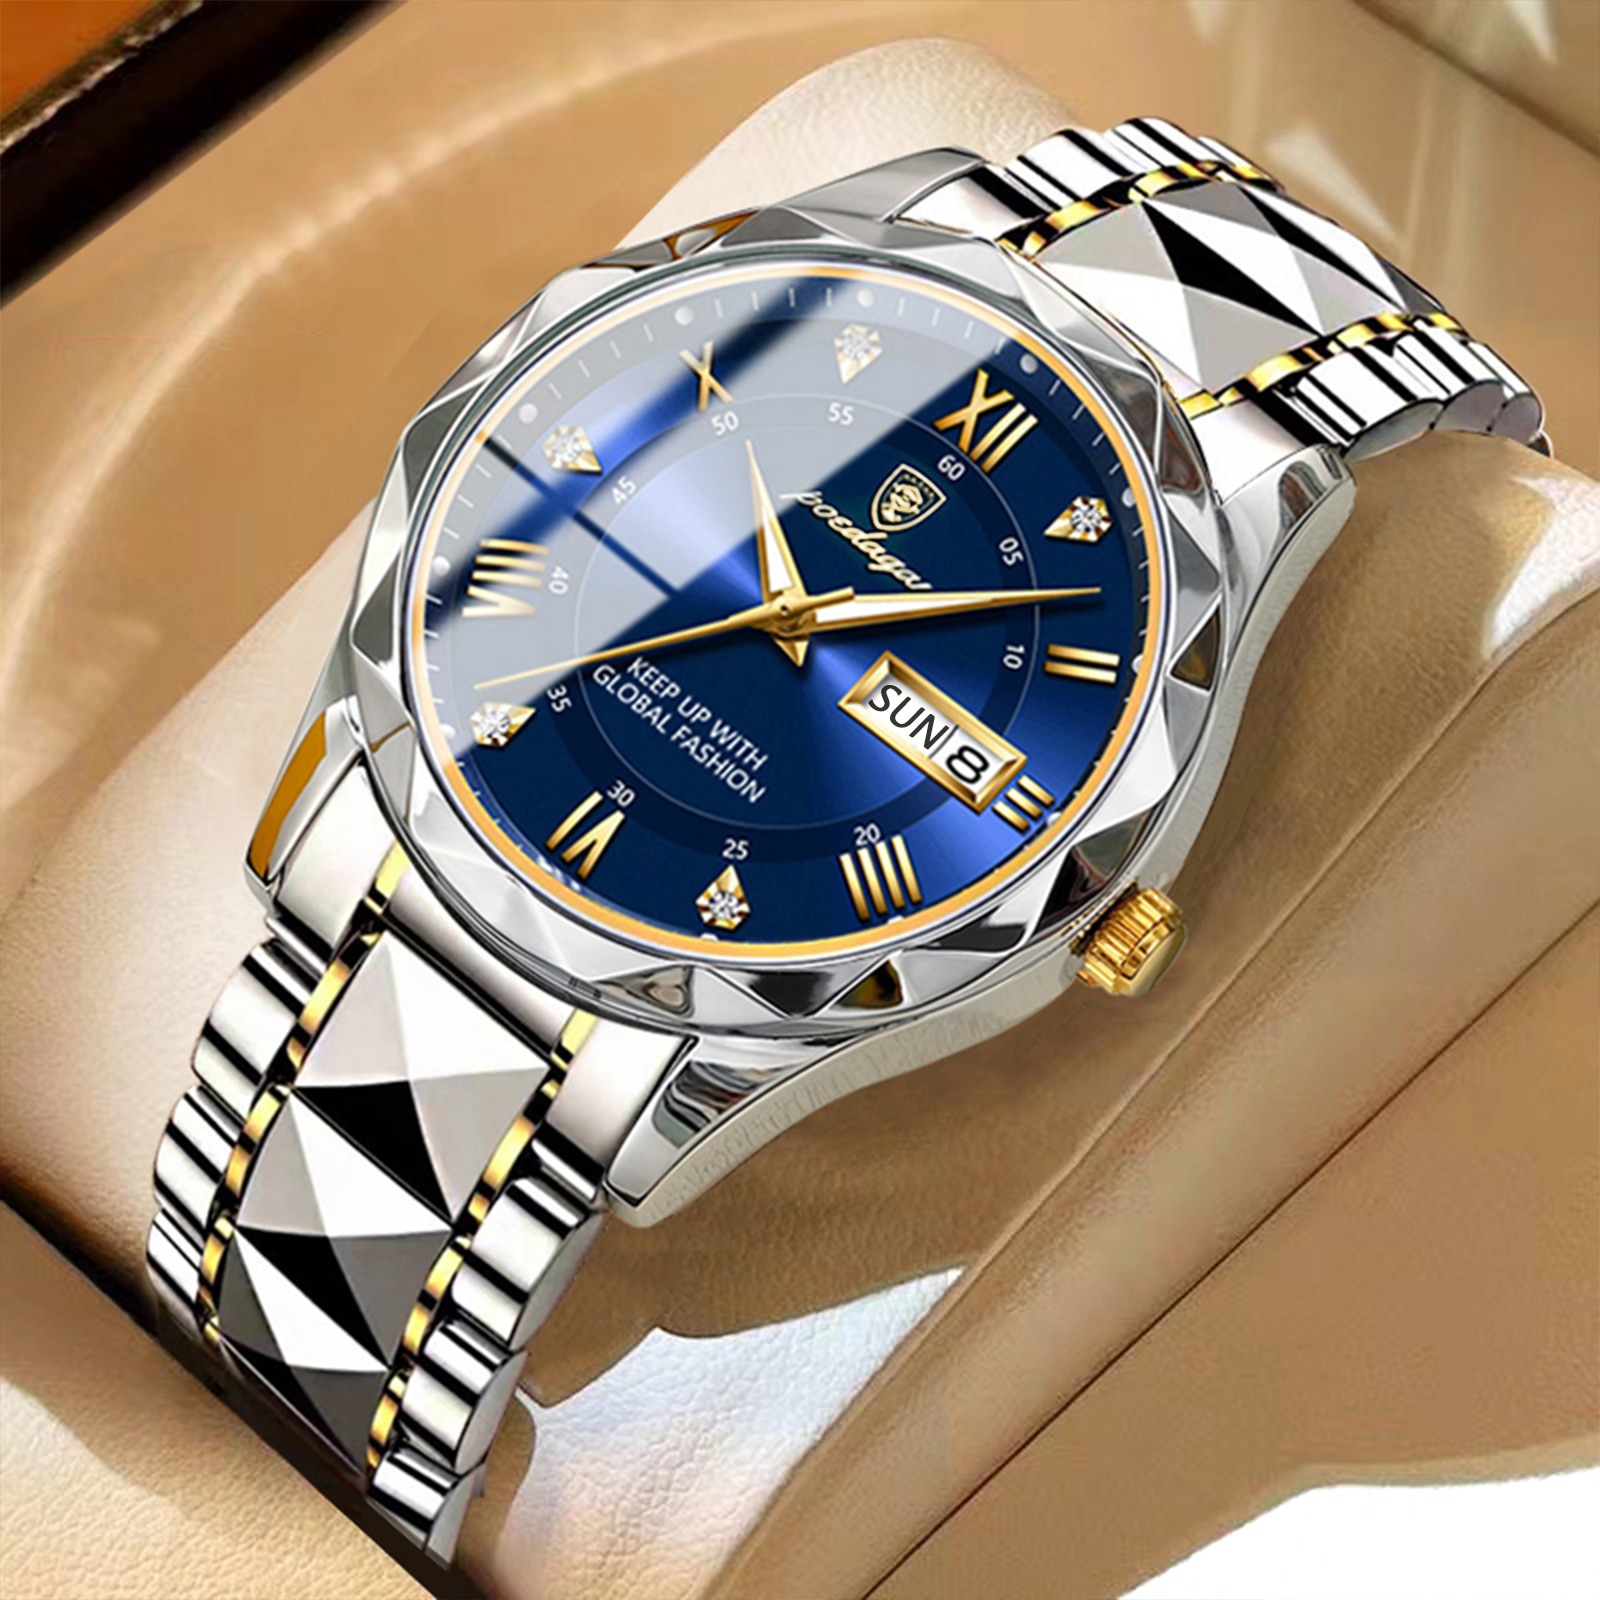 POEDAGAR-Reloj de pulsera de cuarzo para hombre, accesorio masculino de marca superior, de lujo, resistente al agua, luminoso, con fecha y semana, de alta calidad + caja